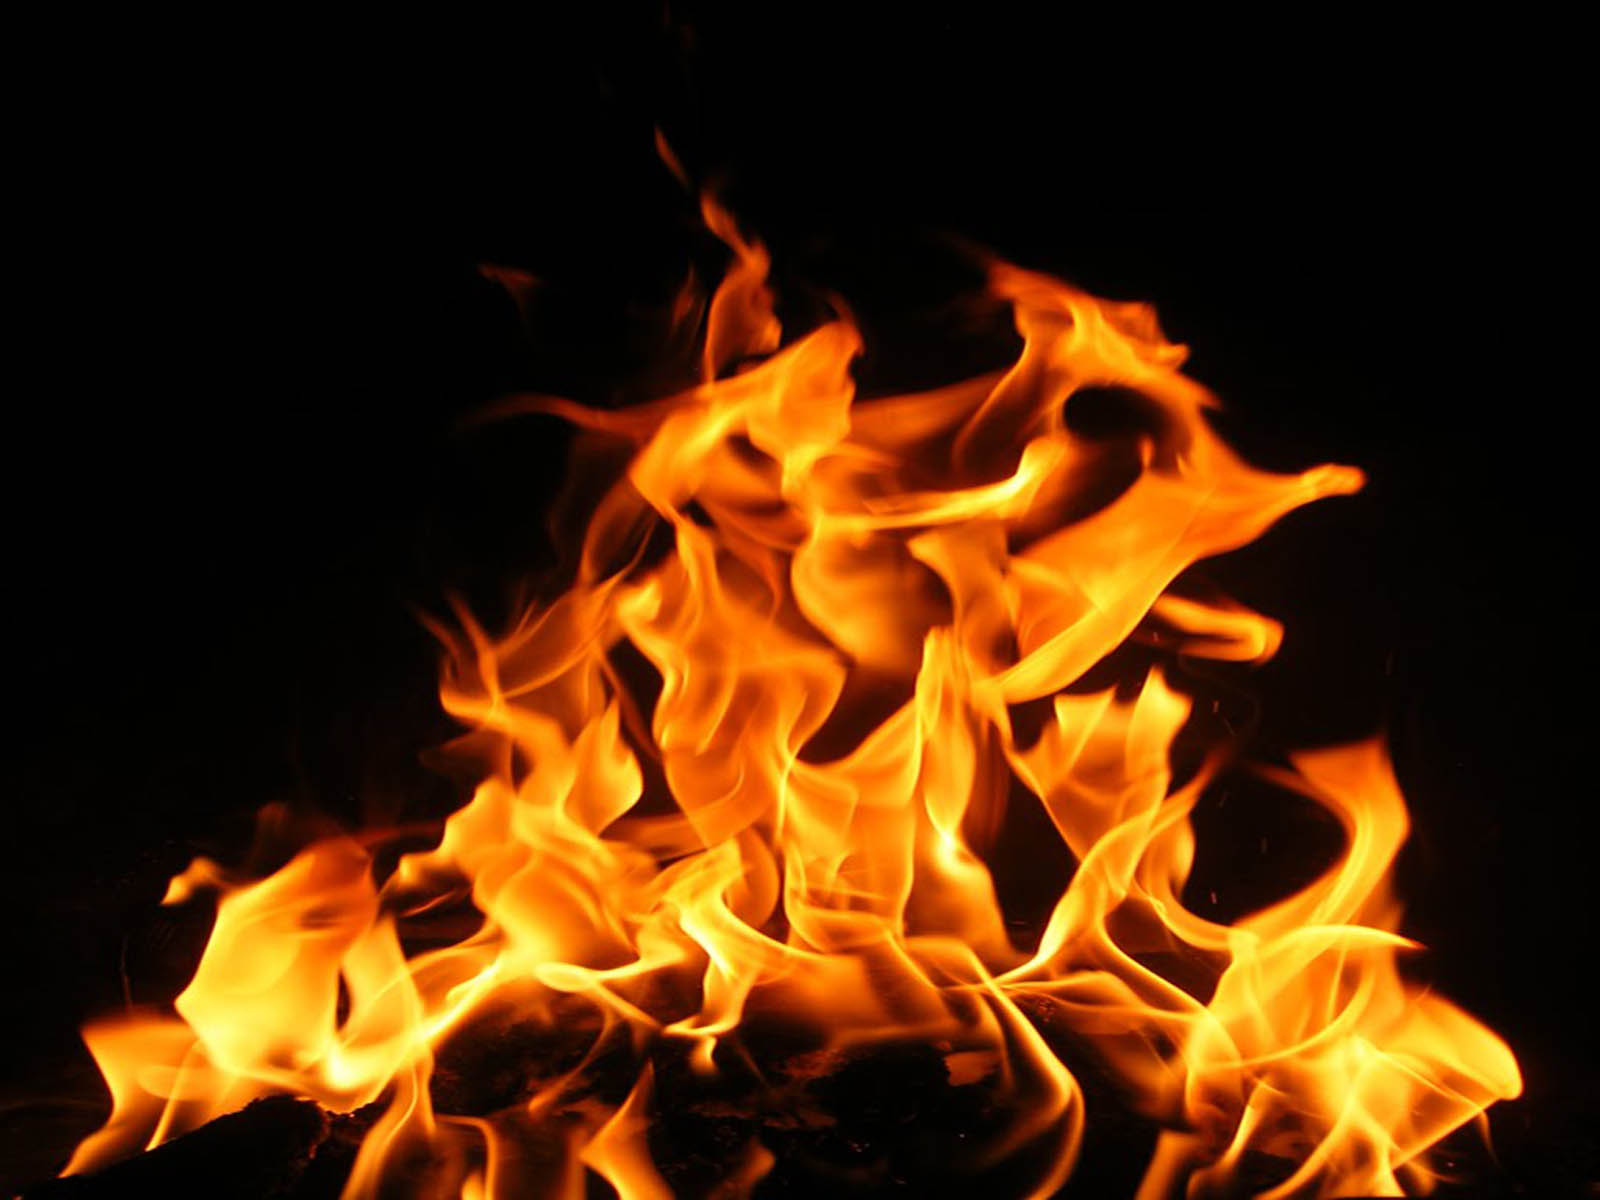 flame wallpaper,fire,flame,heat,bonfire,campfire